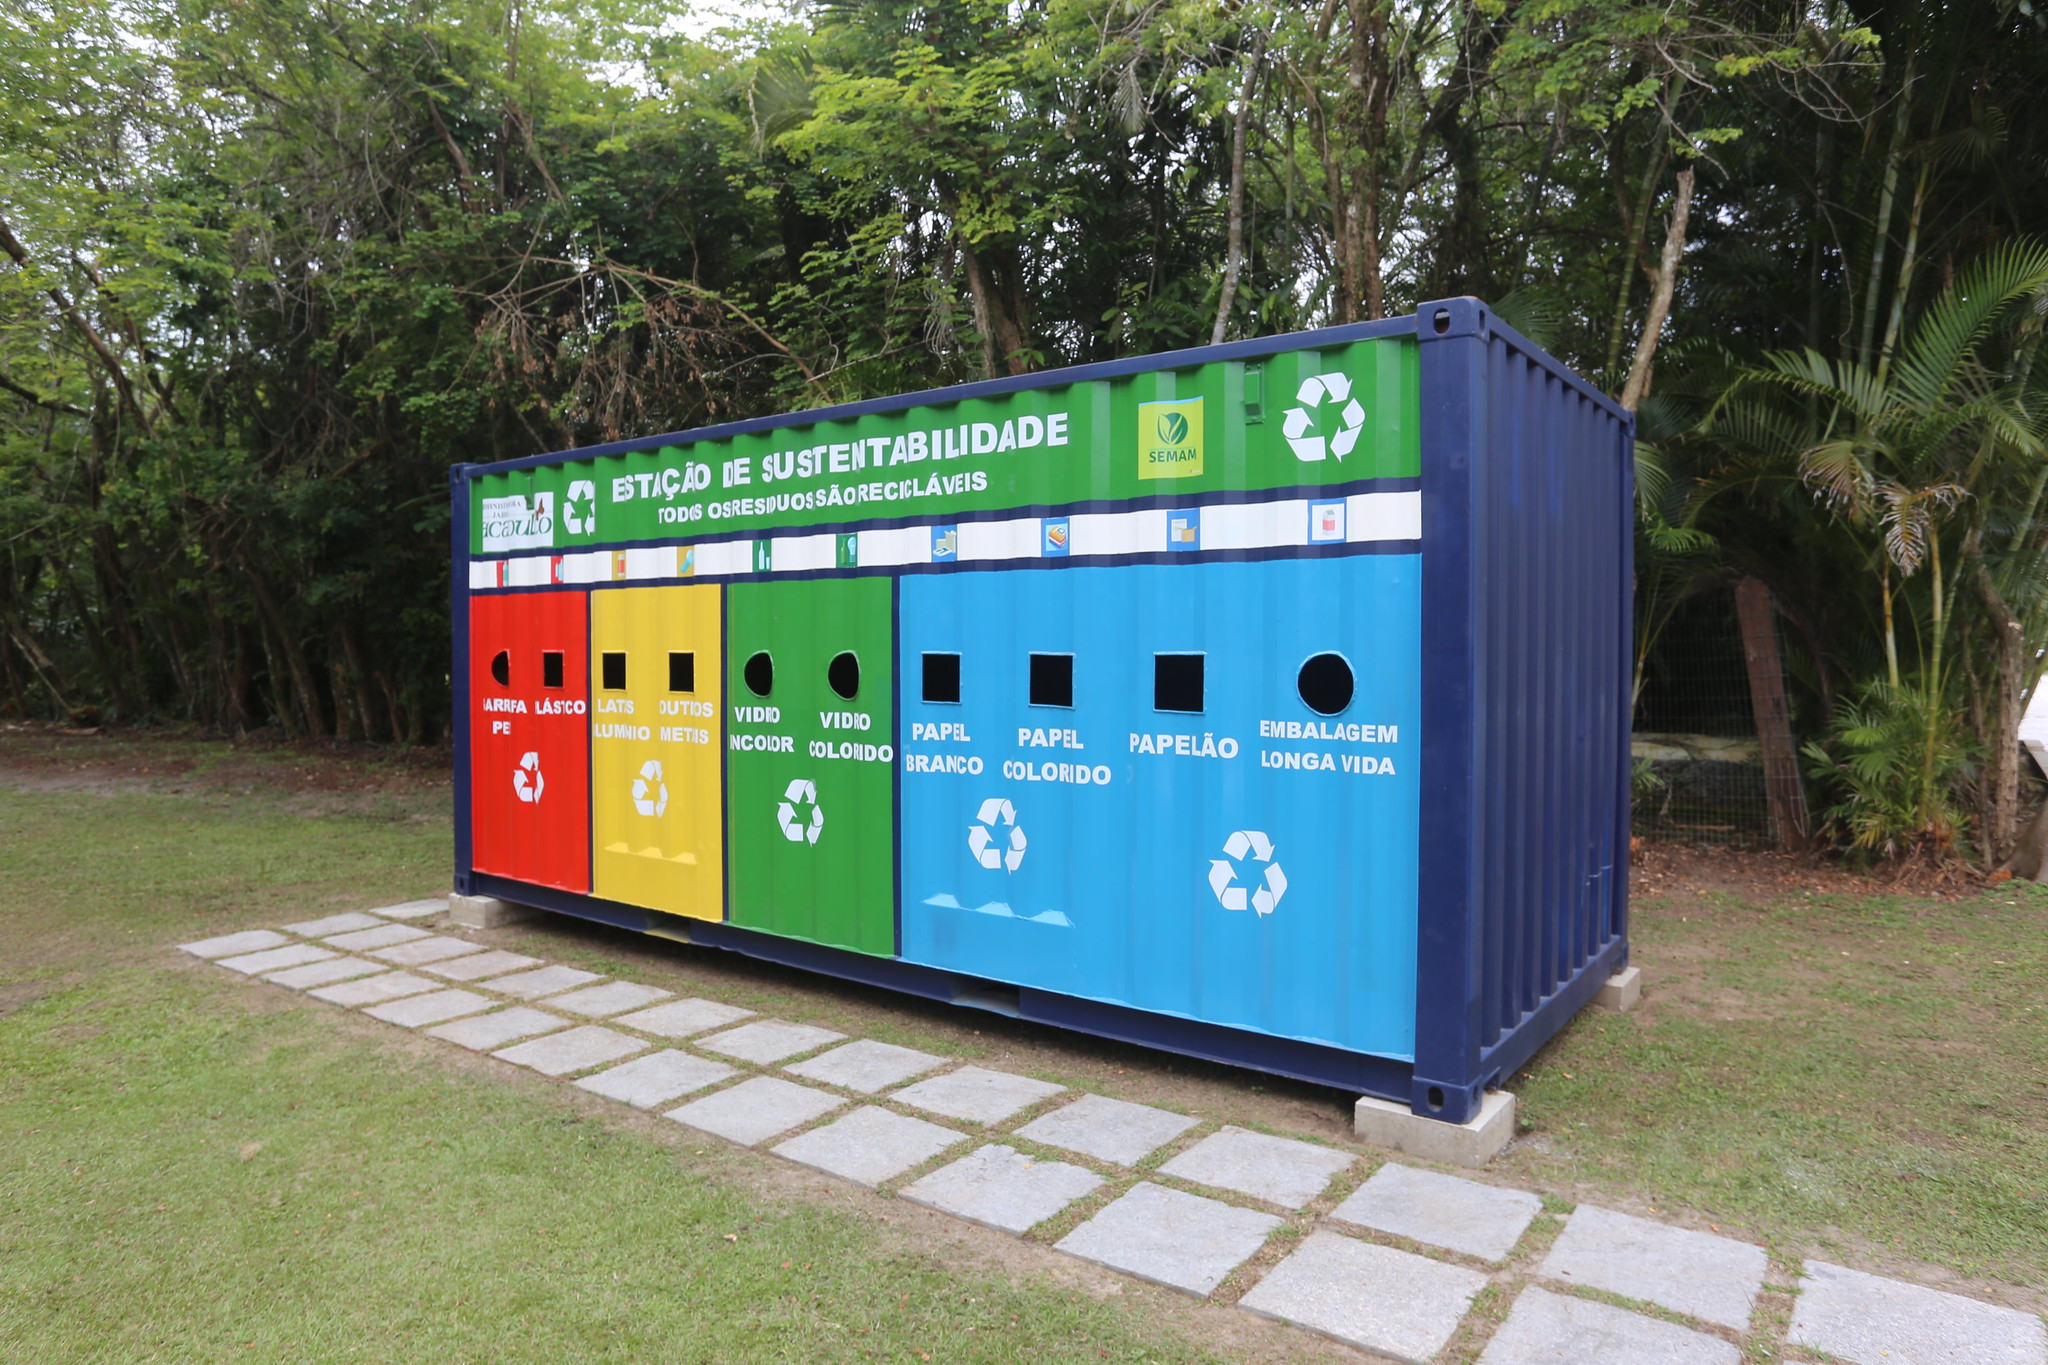 Guarujá sobe 15 posições e fecha 2019 com o 8º melhor índice de limpeza urbana entre paulistas